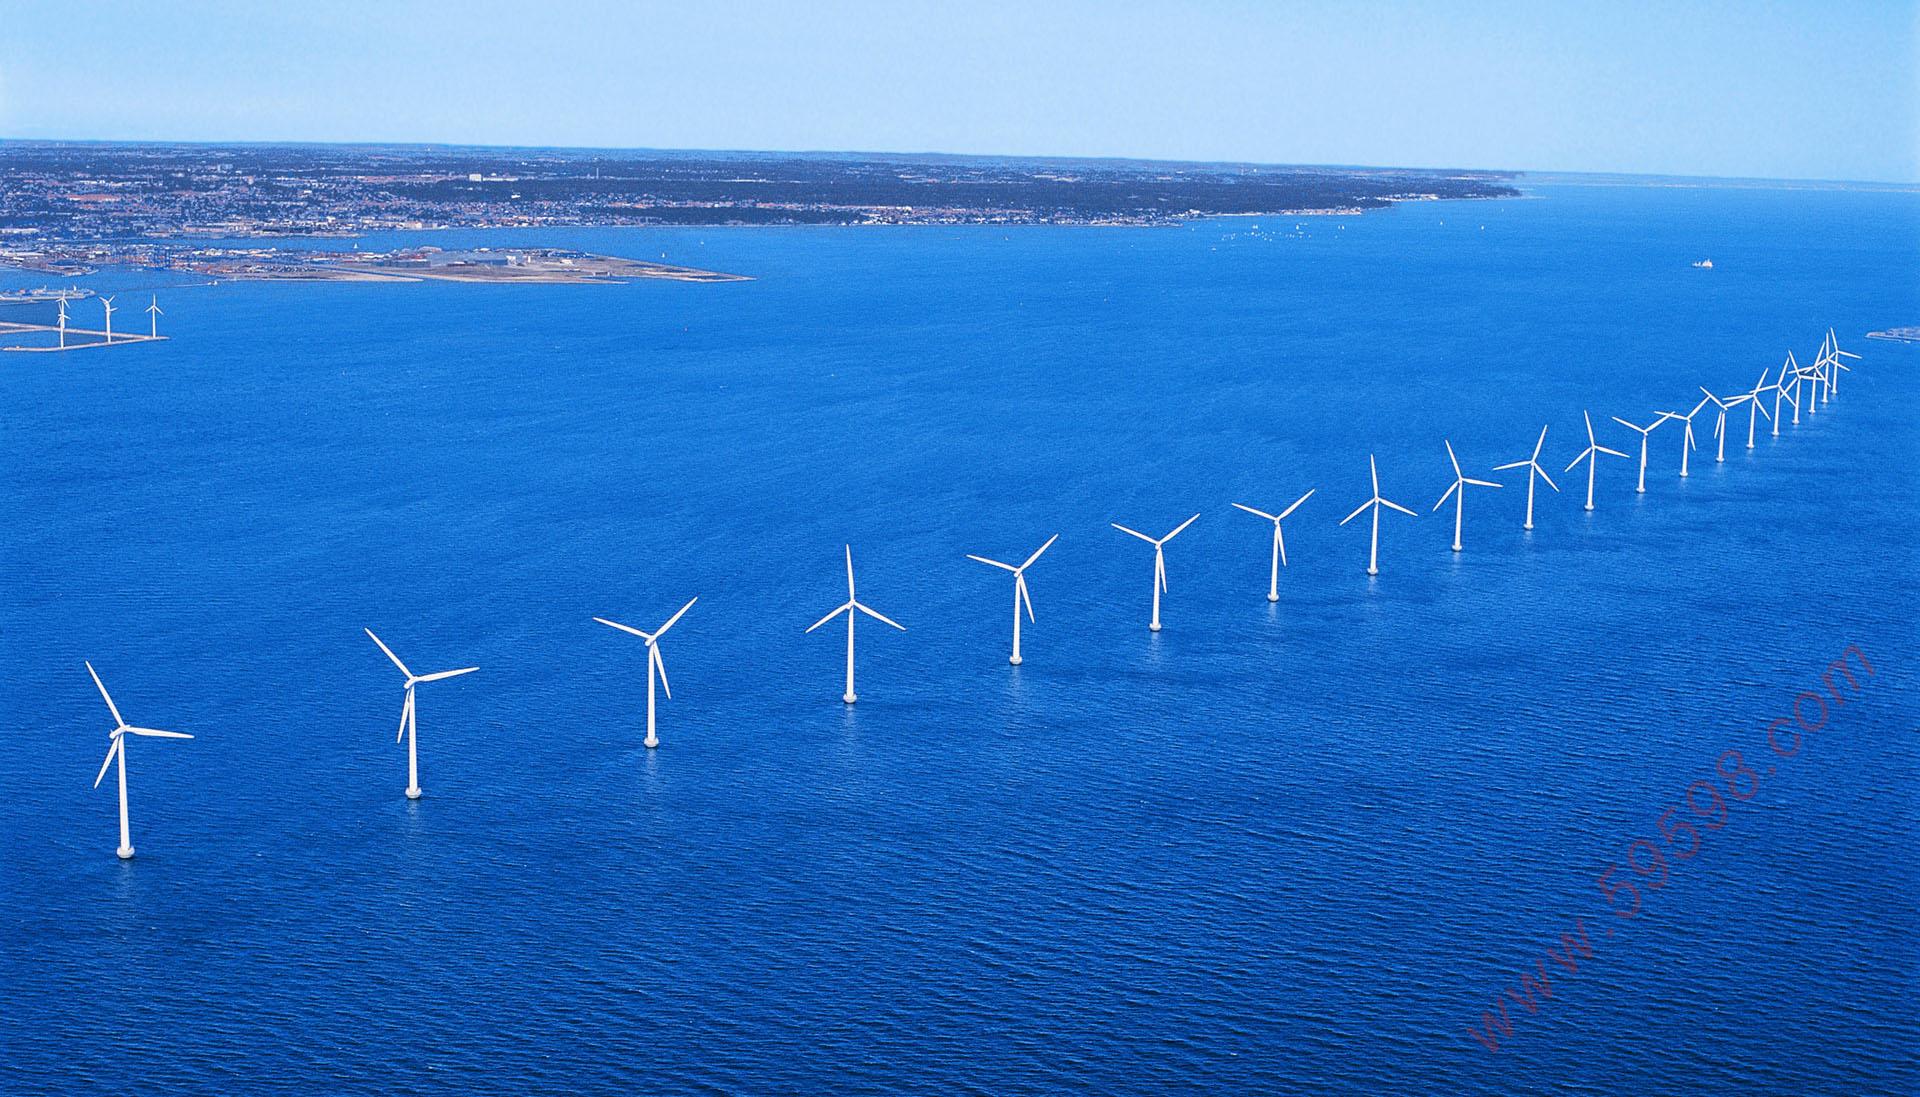 风力发电是风能转换成更为有用的形式，如电力，利用风力涡轮机。